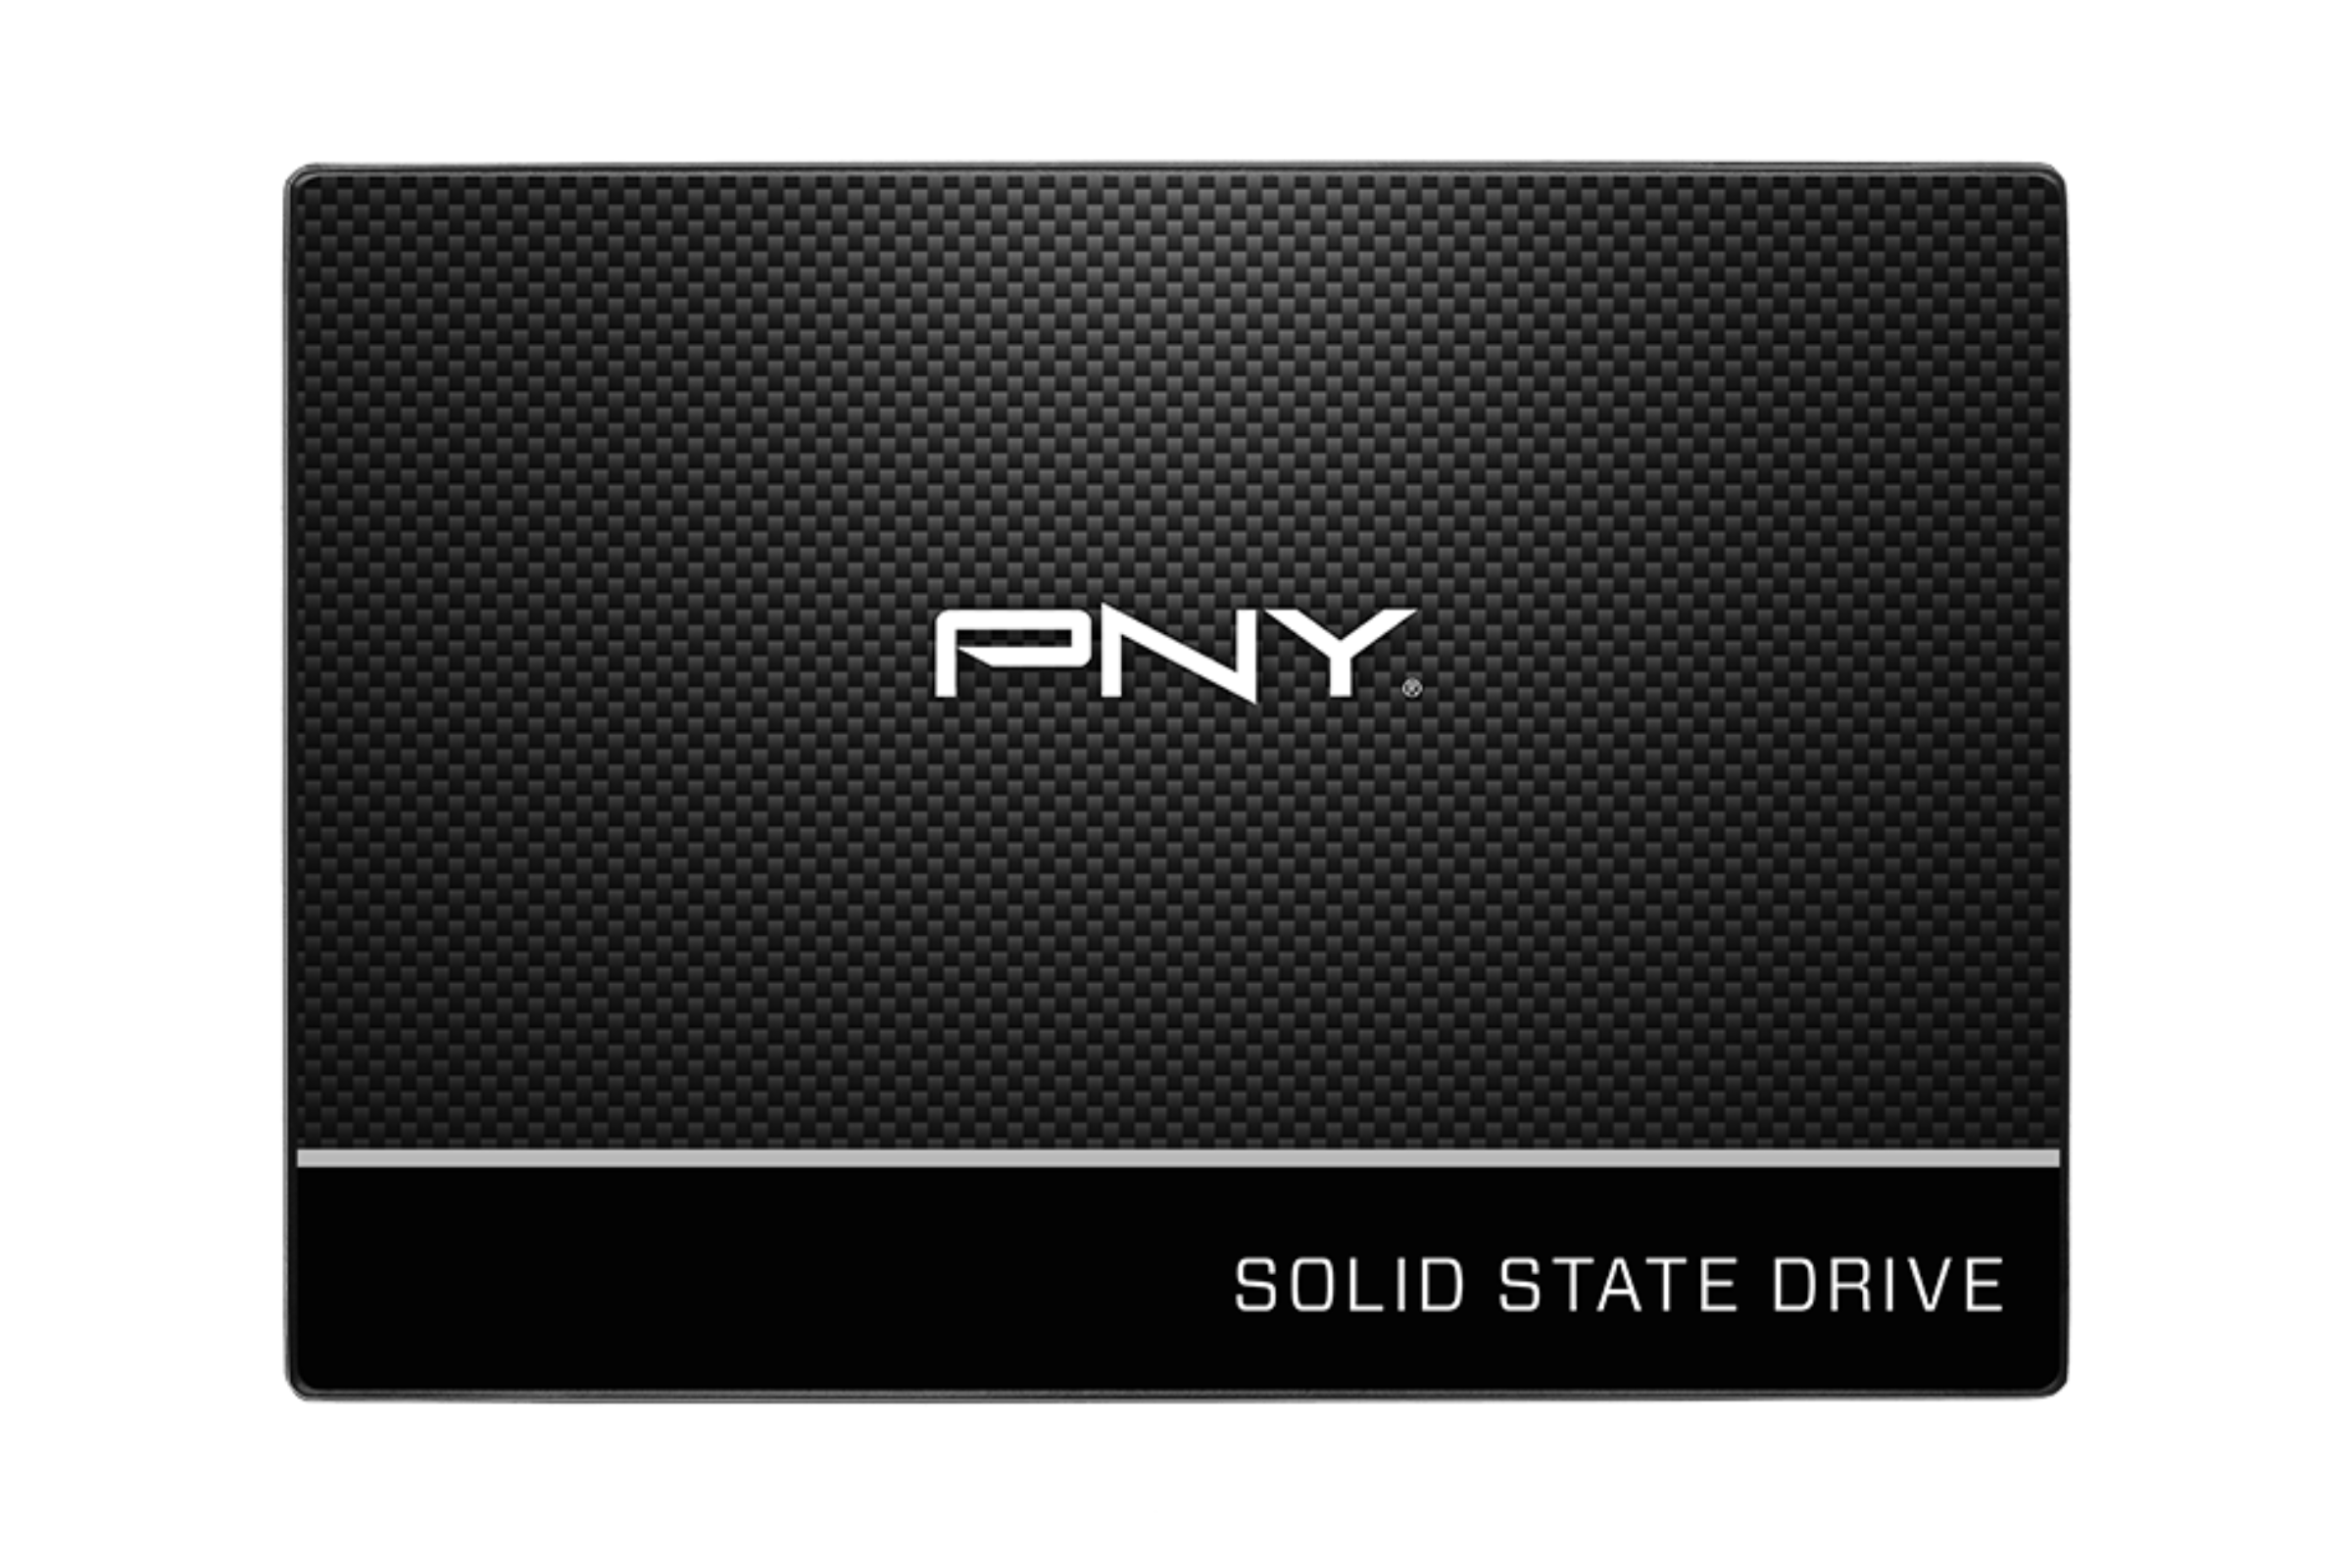 PNY SSD internal drive on a white background